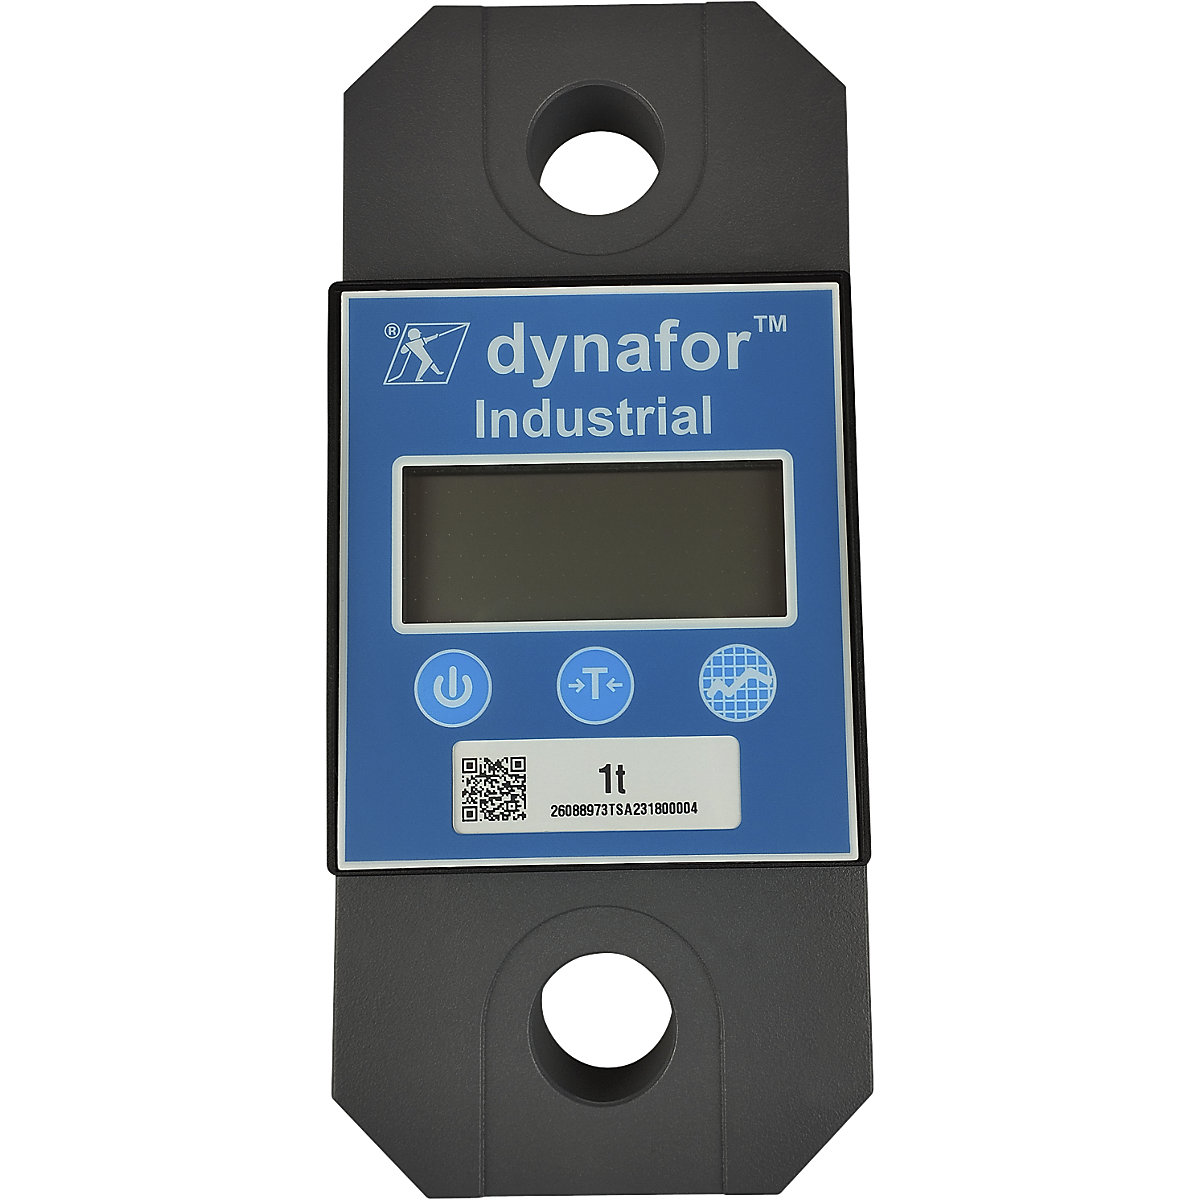 dynafor™ LLZ2 dynamometer